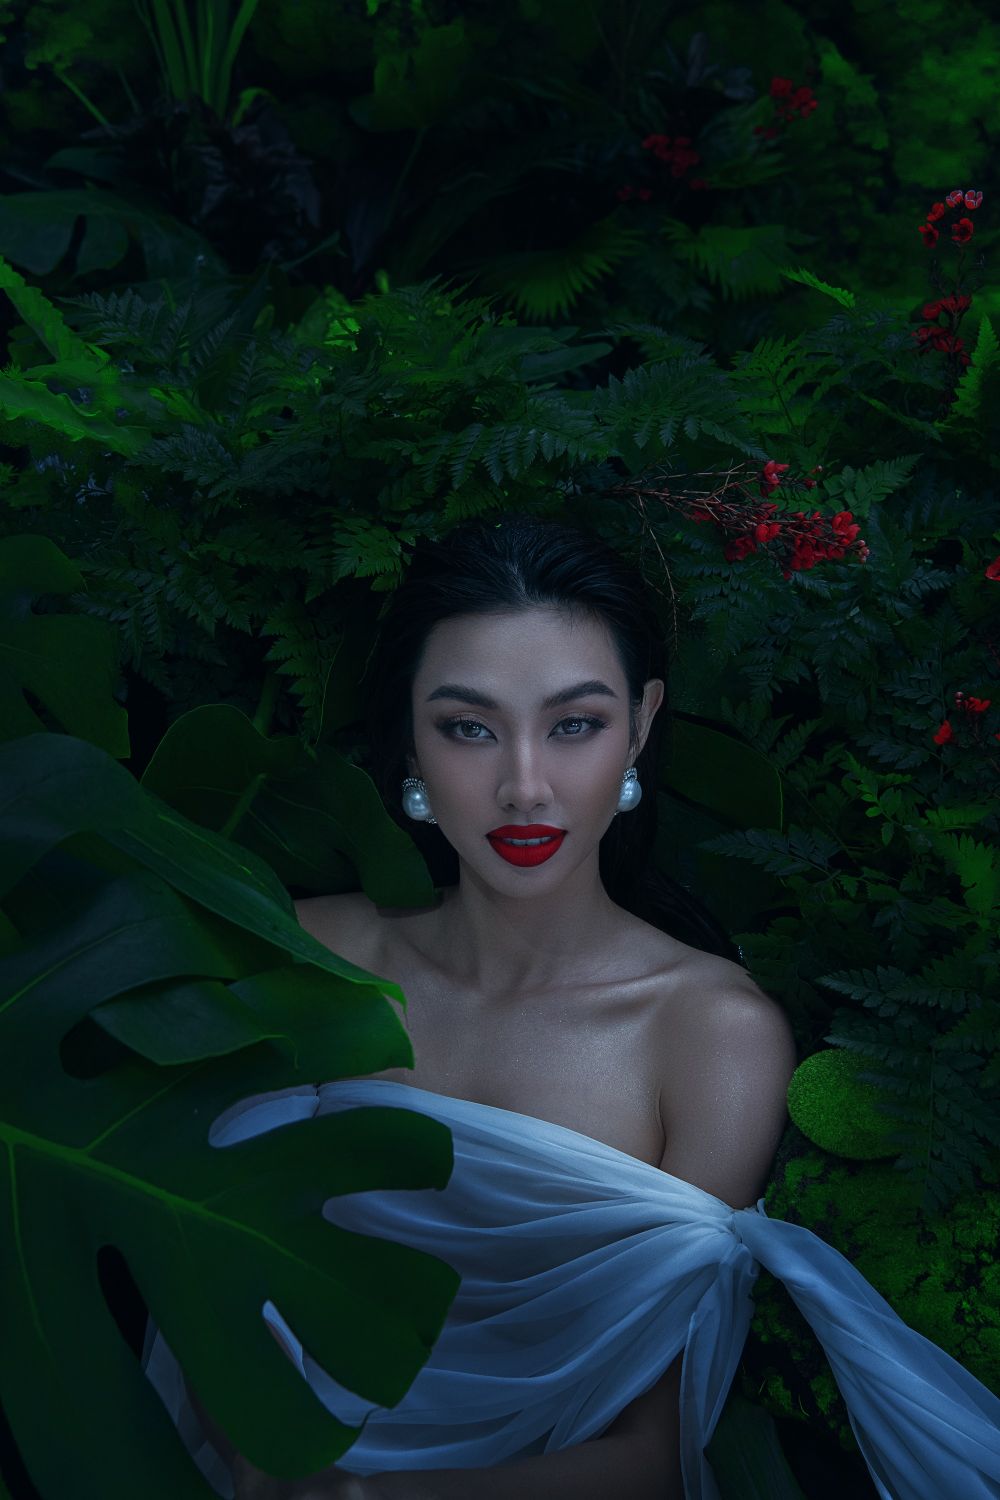 HOA HAU THUY TIEN 12 Diện trang phục xuyên thấu, Hoa hậu Thùy Tiên nóng bỏng thả dáng dưới hồ nước